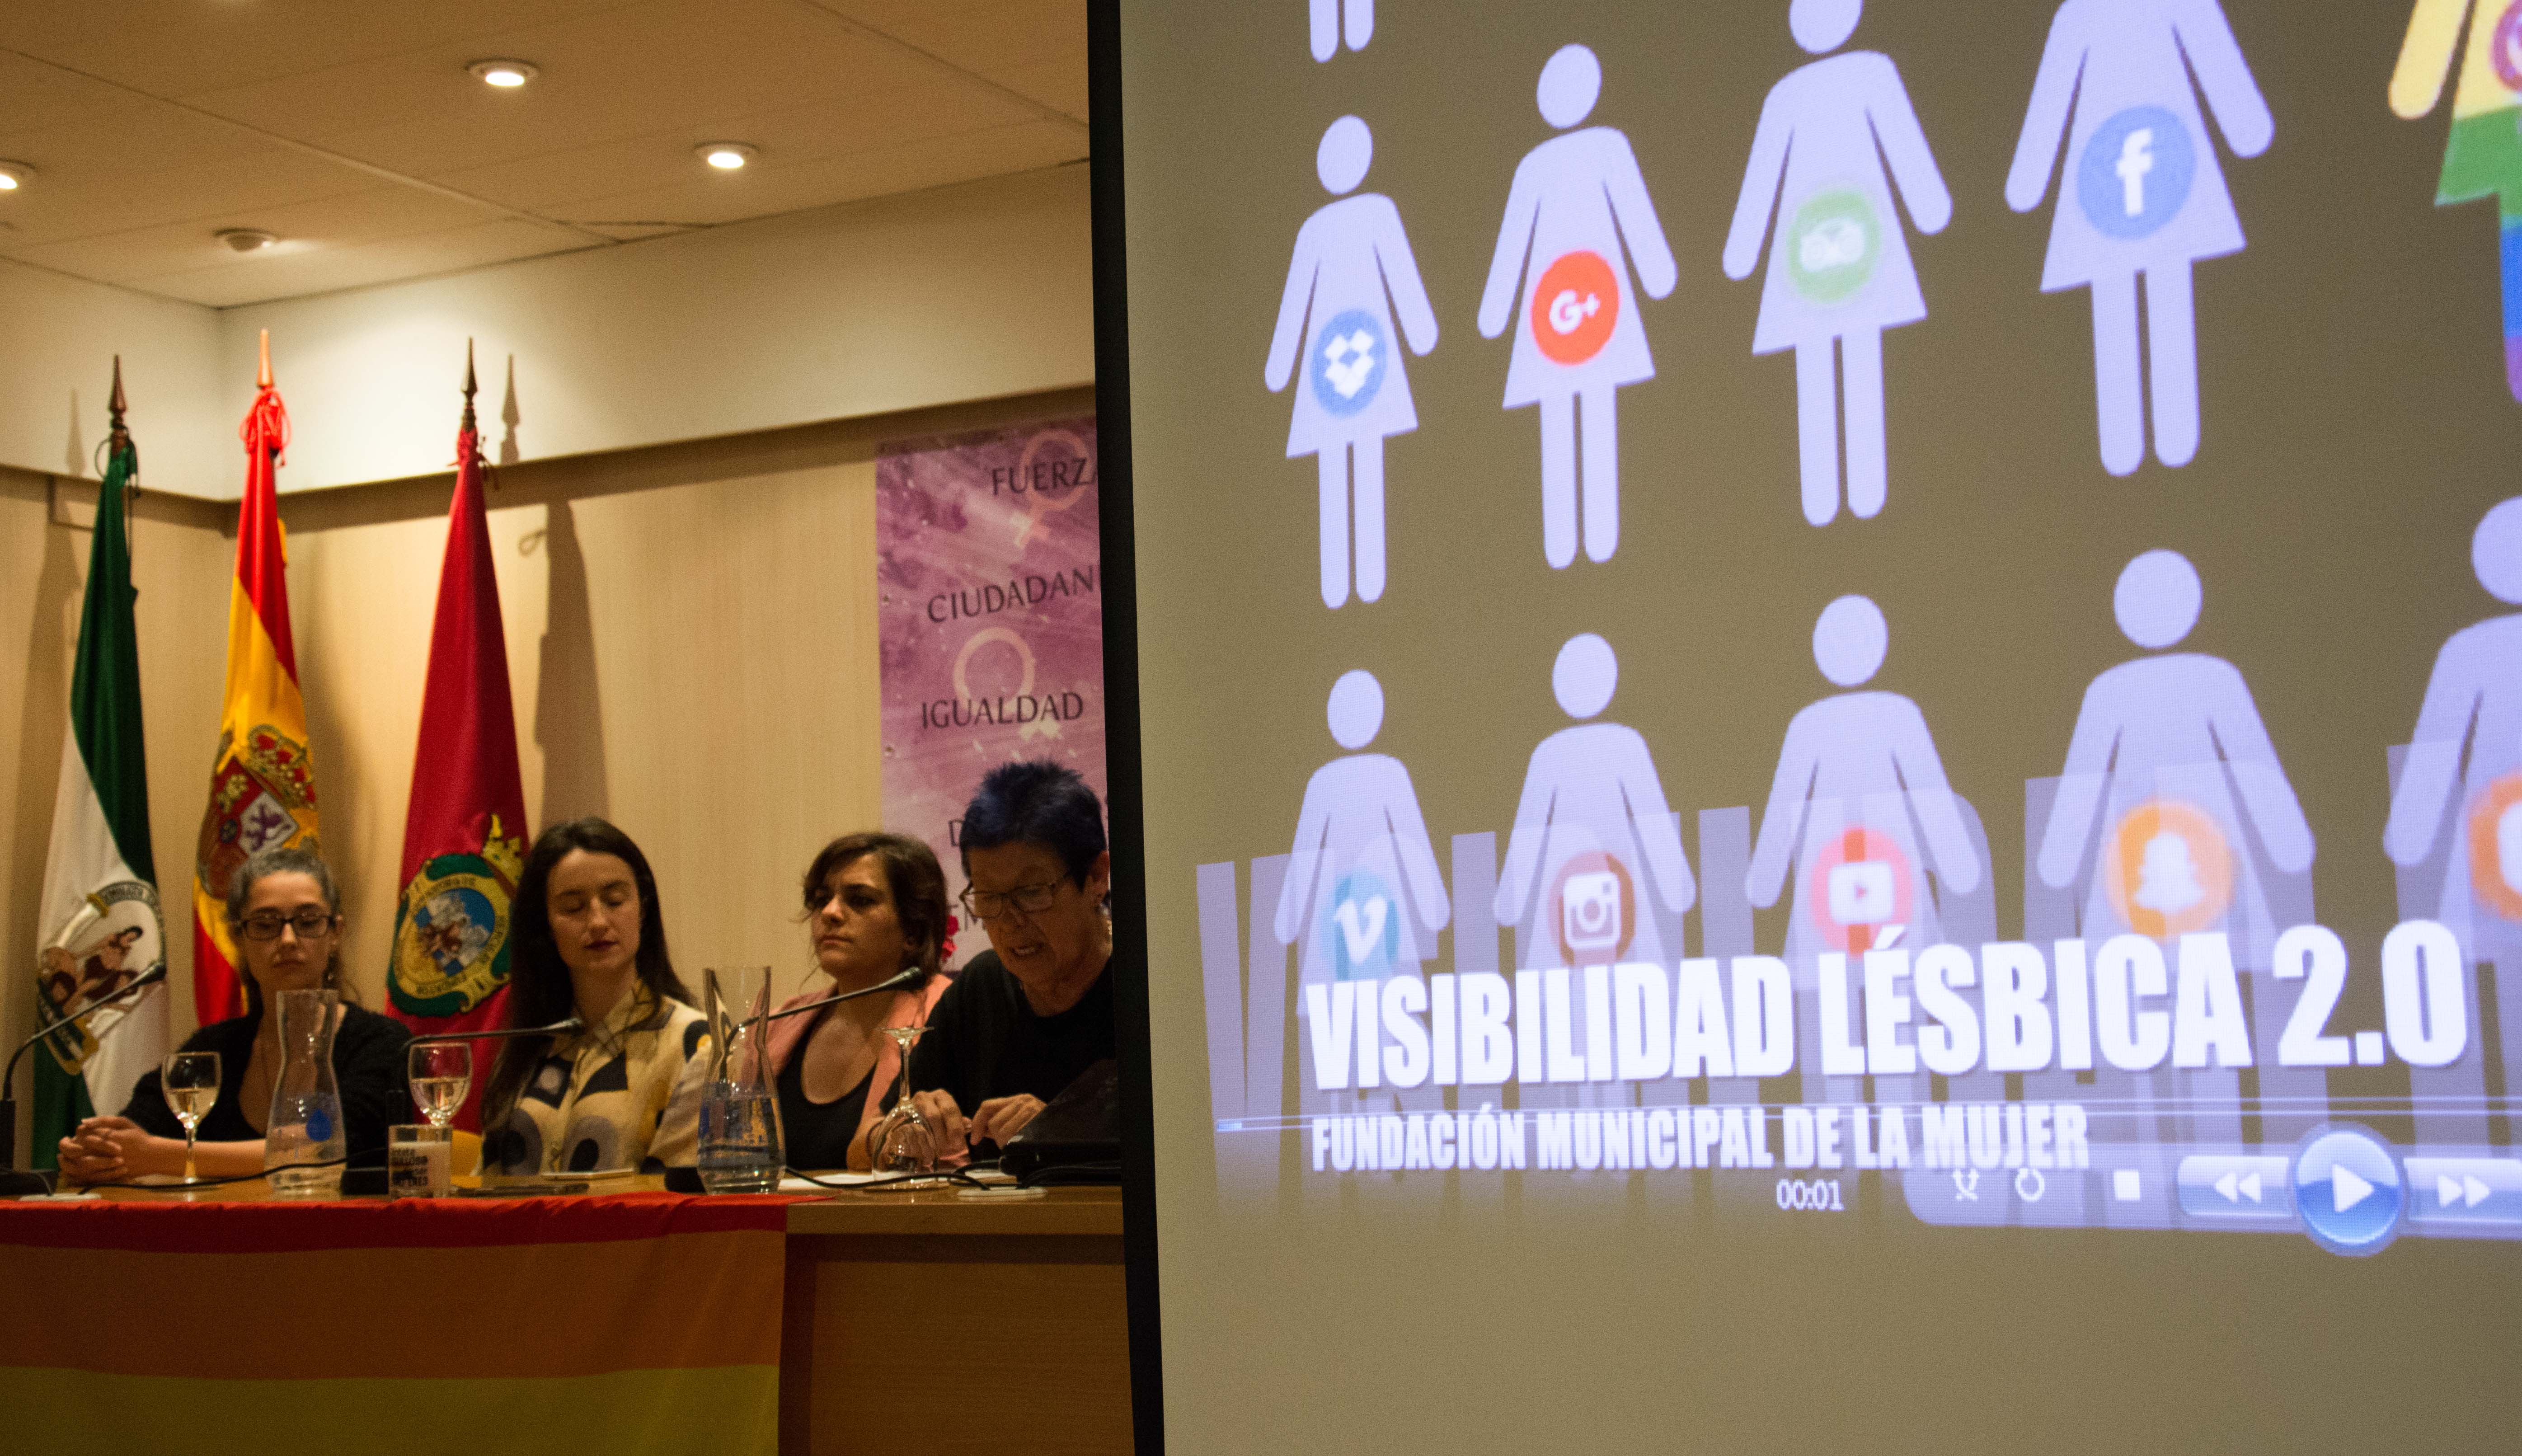 Mesa redonda sobre visibilidad lésbica en la Fundación Municipal de la Mujer. FOTO: ESTEFANÍA ESCORIZA.